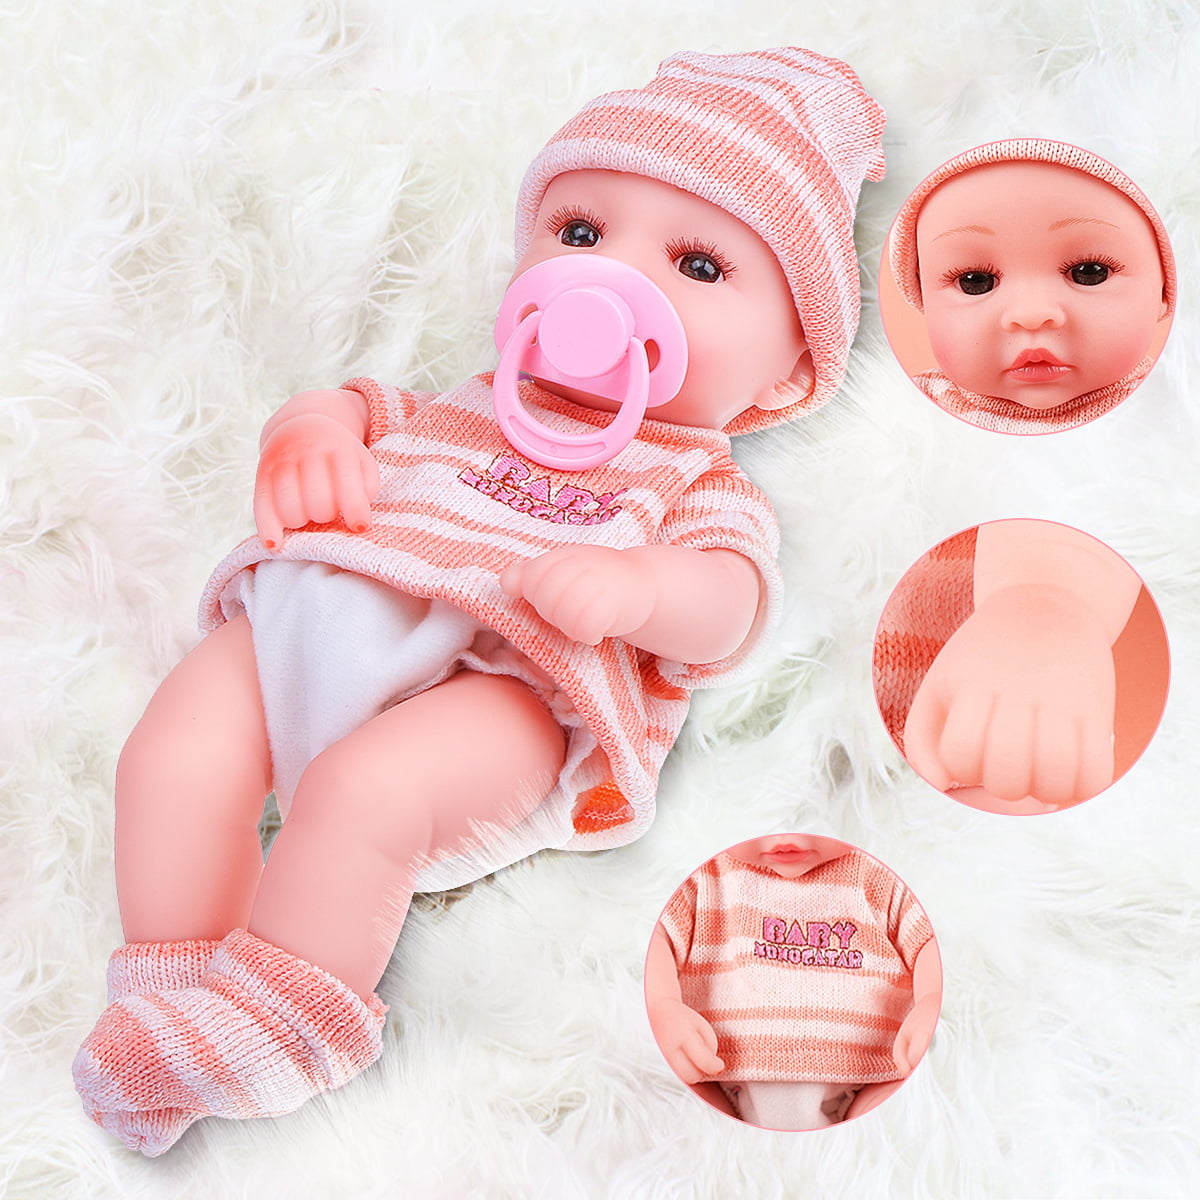 Novashion 19 Reborn Baby Dolls Realistic Newborn Boy Girl Doll Solid